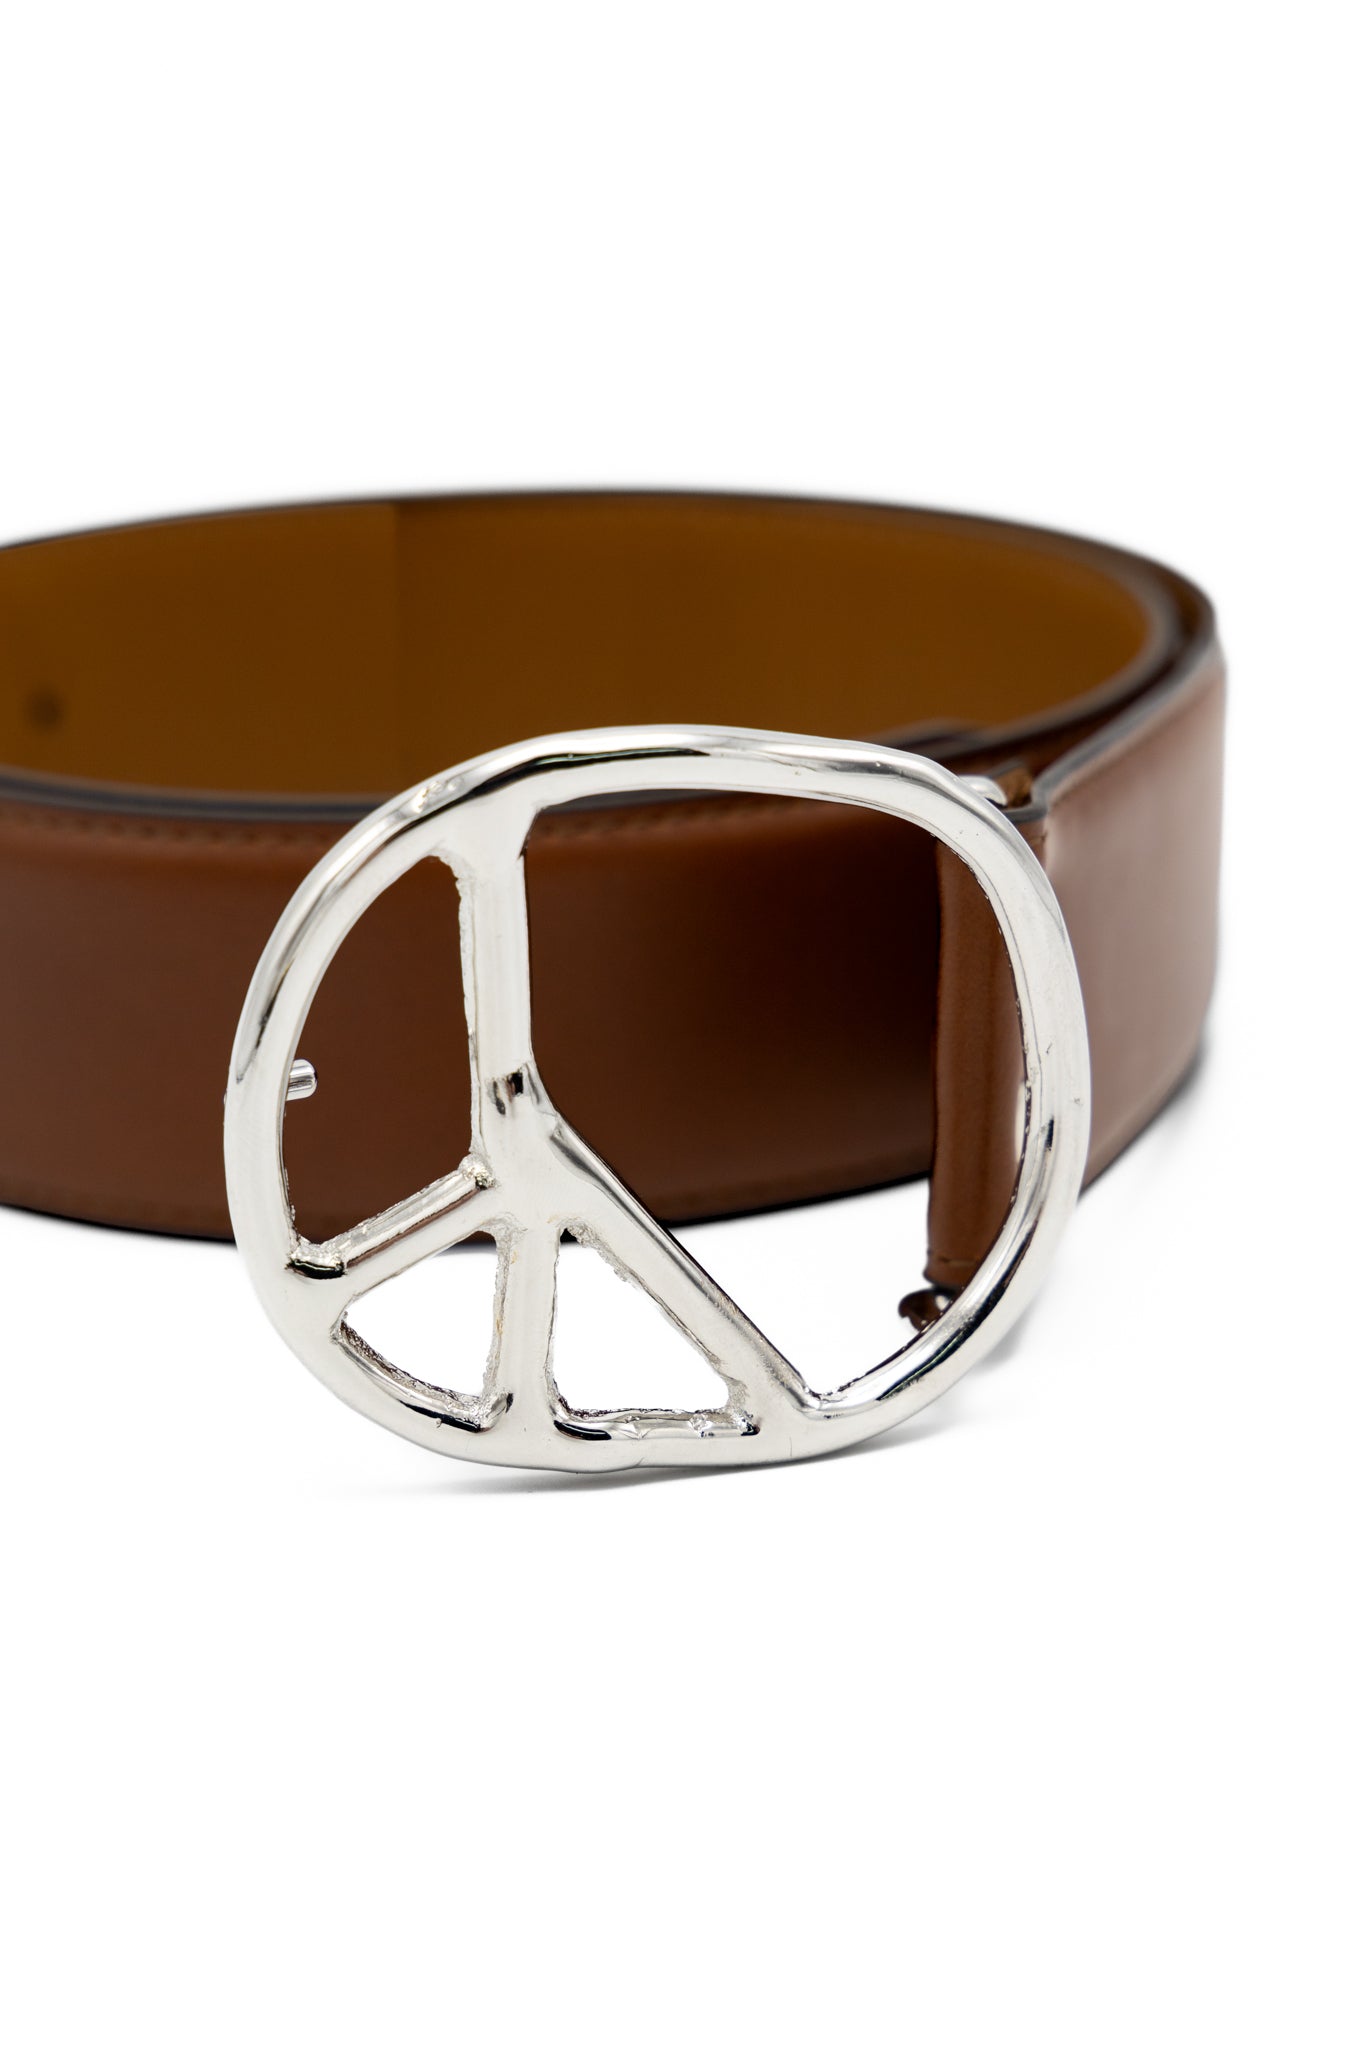 Peace Buckle Belt - Steer Leather - Brown